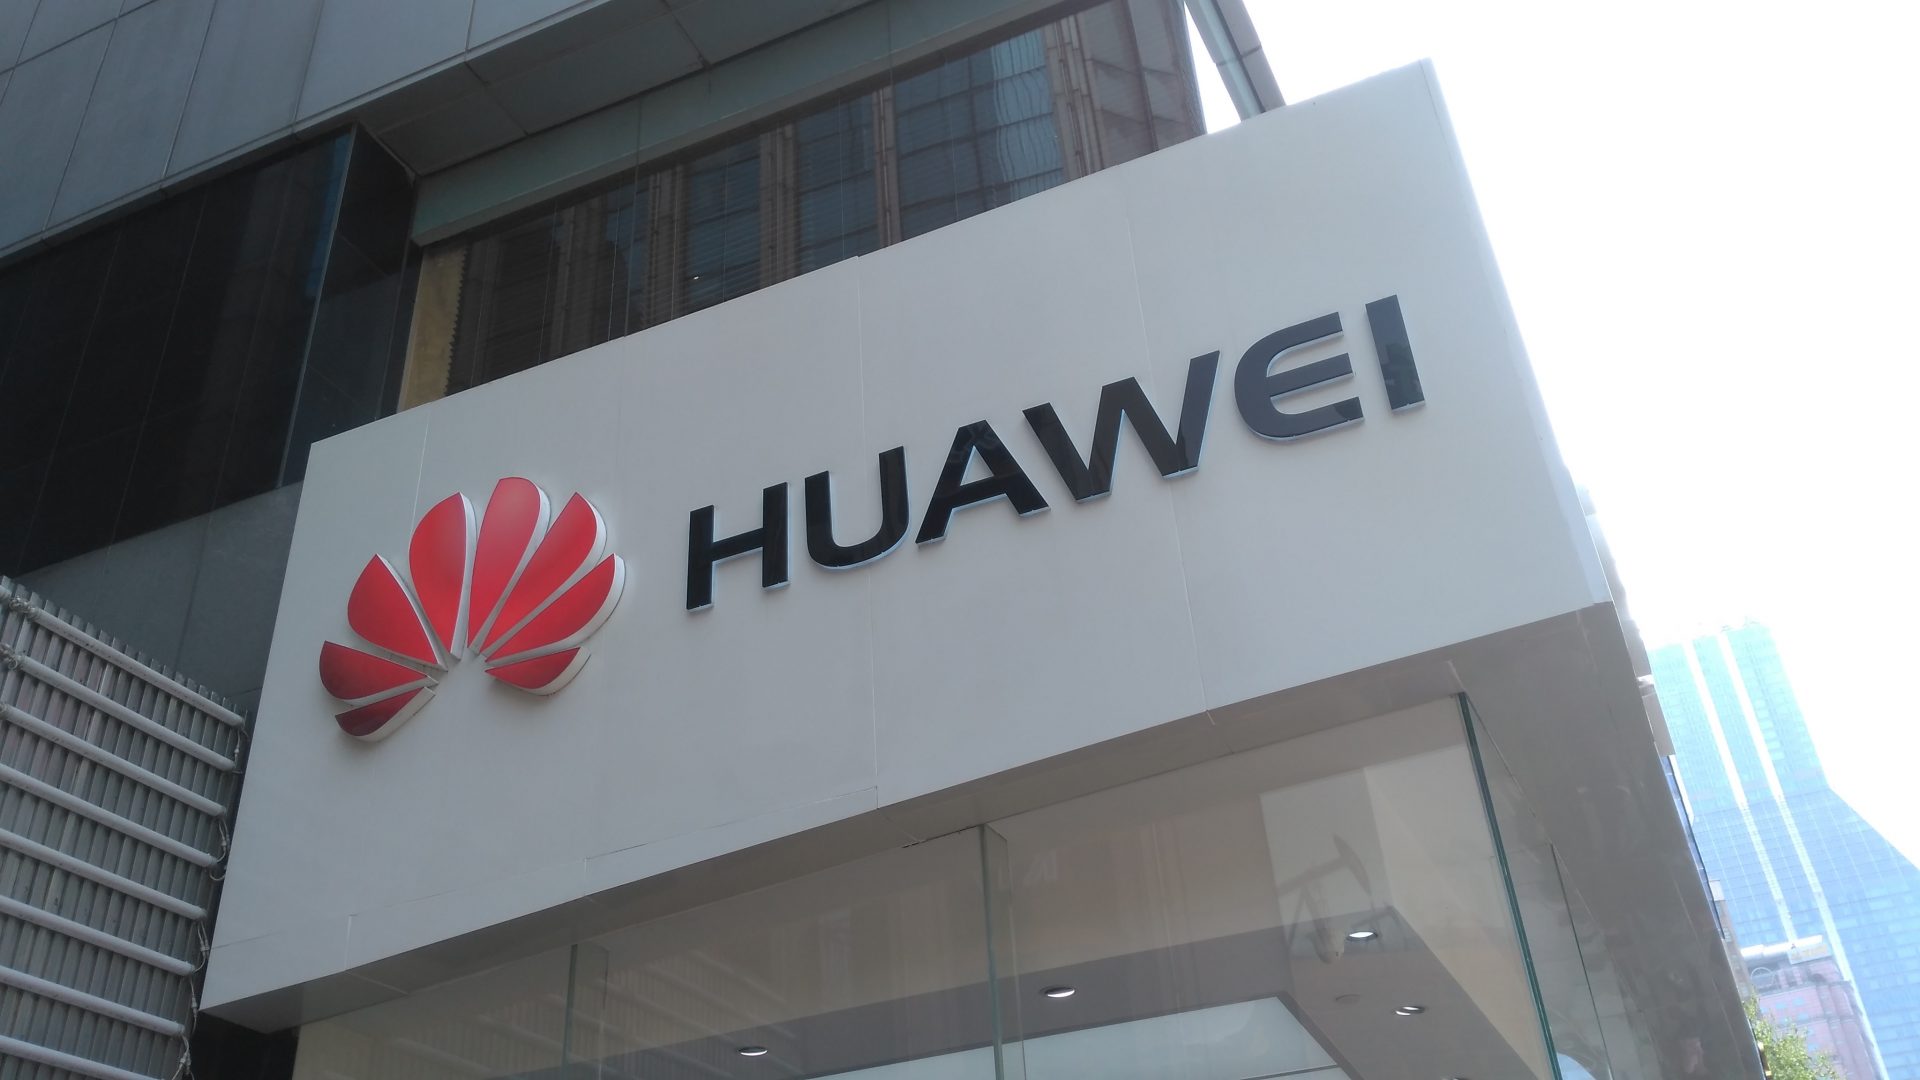 ทางการแคนาดาไล่ทูตประจำประเทศจีนออก หลังมีประเด็นการจับกุมรองประธาน Huawei เรื้อรัง